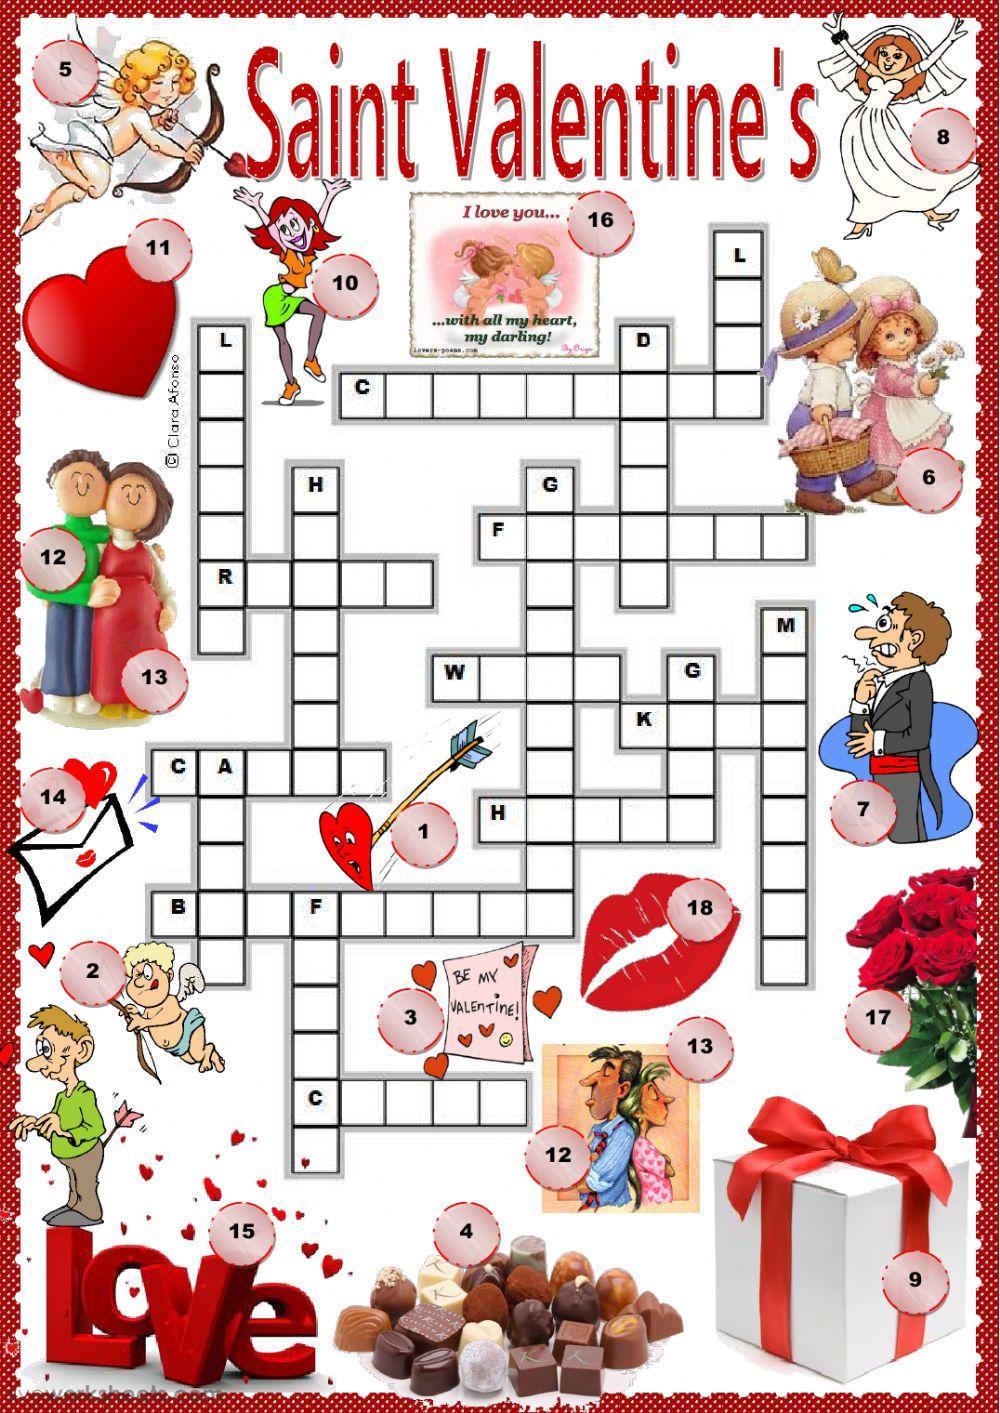 St. Valentine's crossword